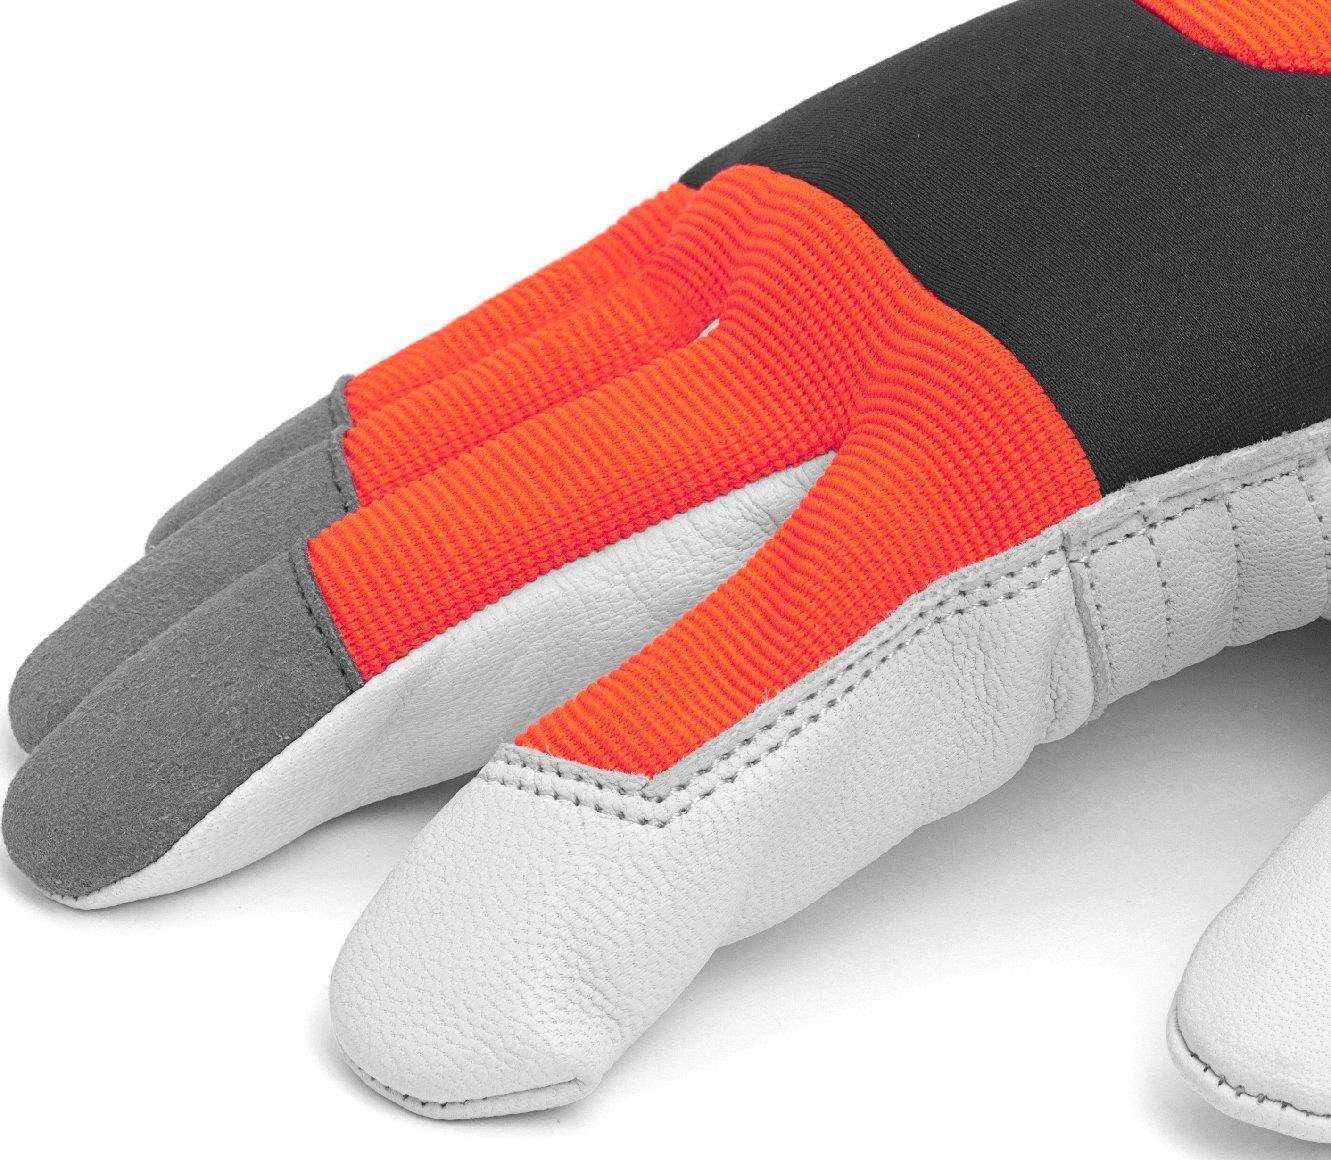 Husqvarna Handschuhe Functional mit Schnittschutz